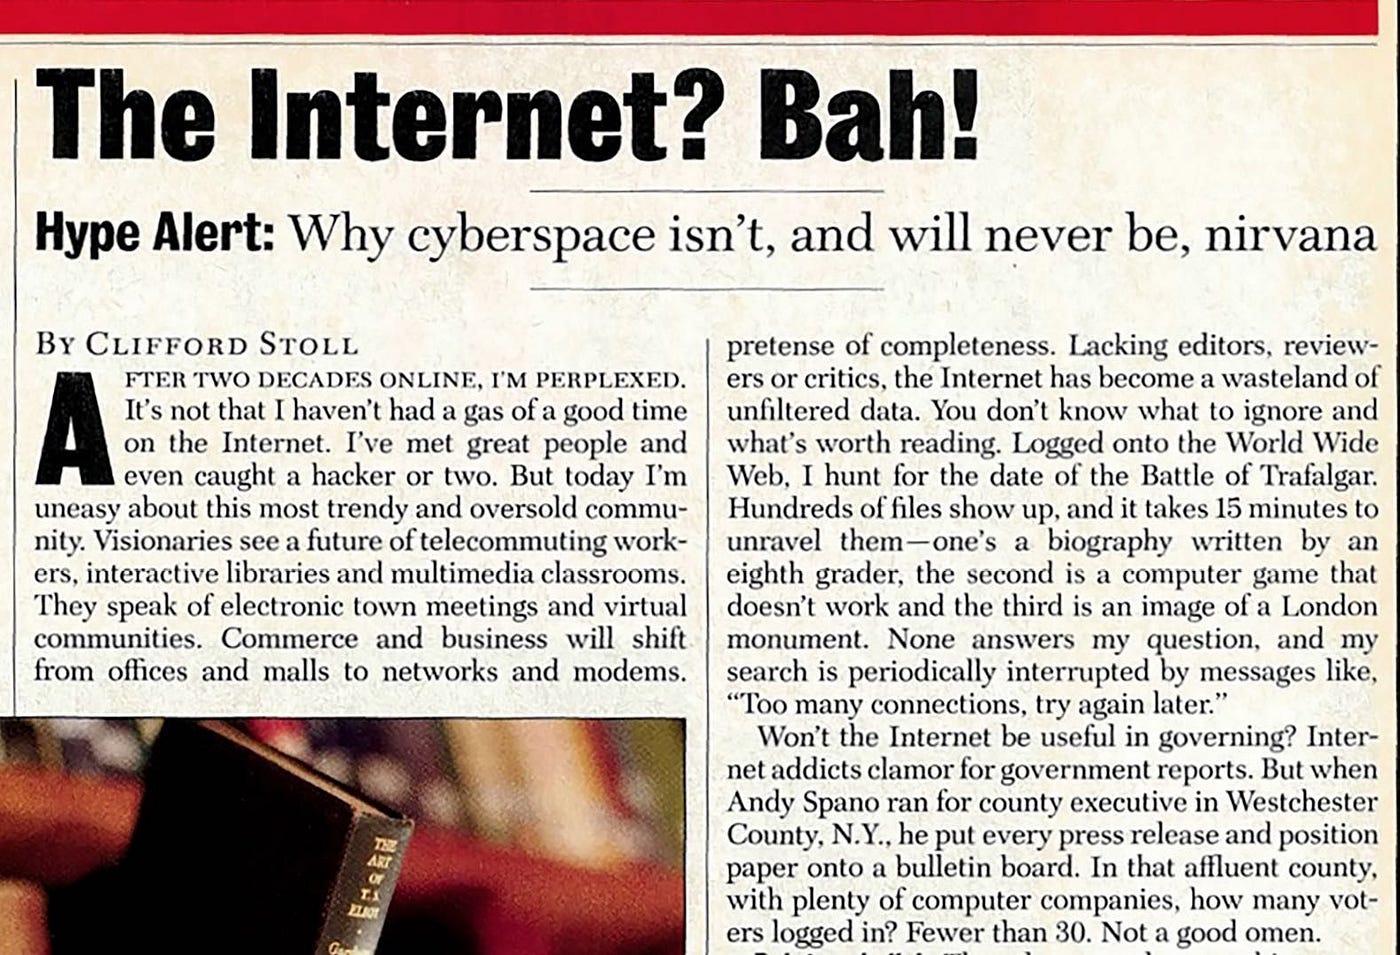 Article de Newsweek expliquant qu'Internet ne serait jamais le nirvana